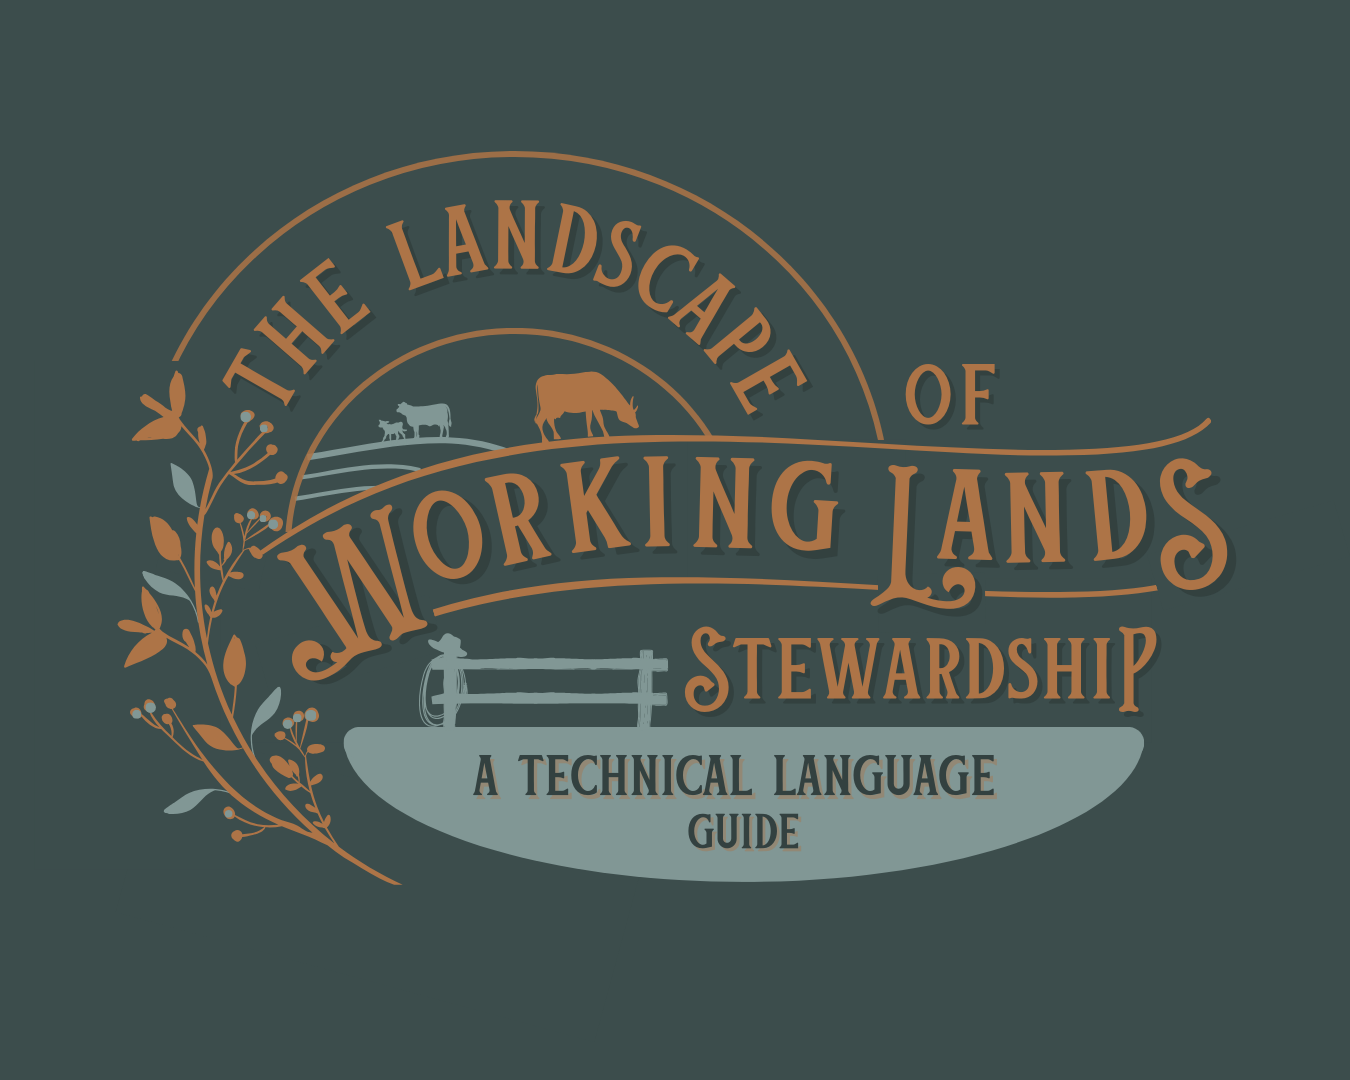 The Landscape of Working Lands Stewardship Jargon (2).png